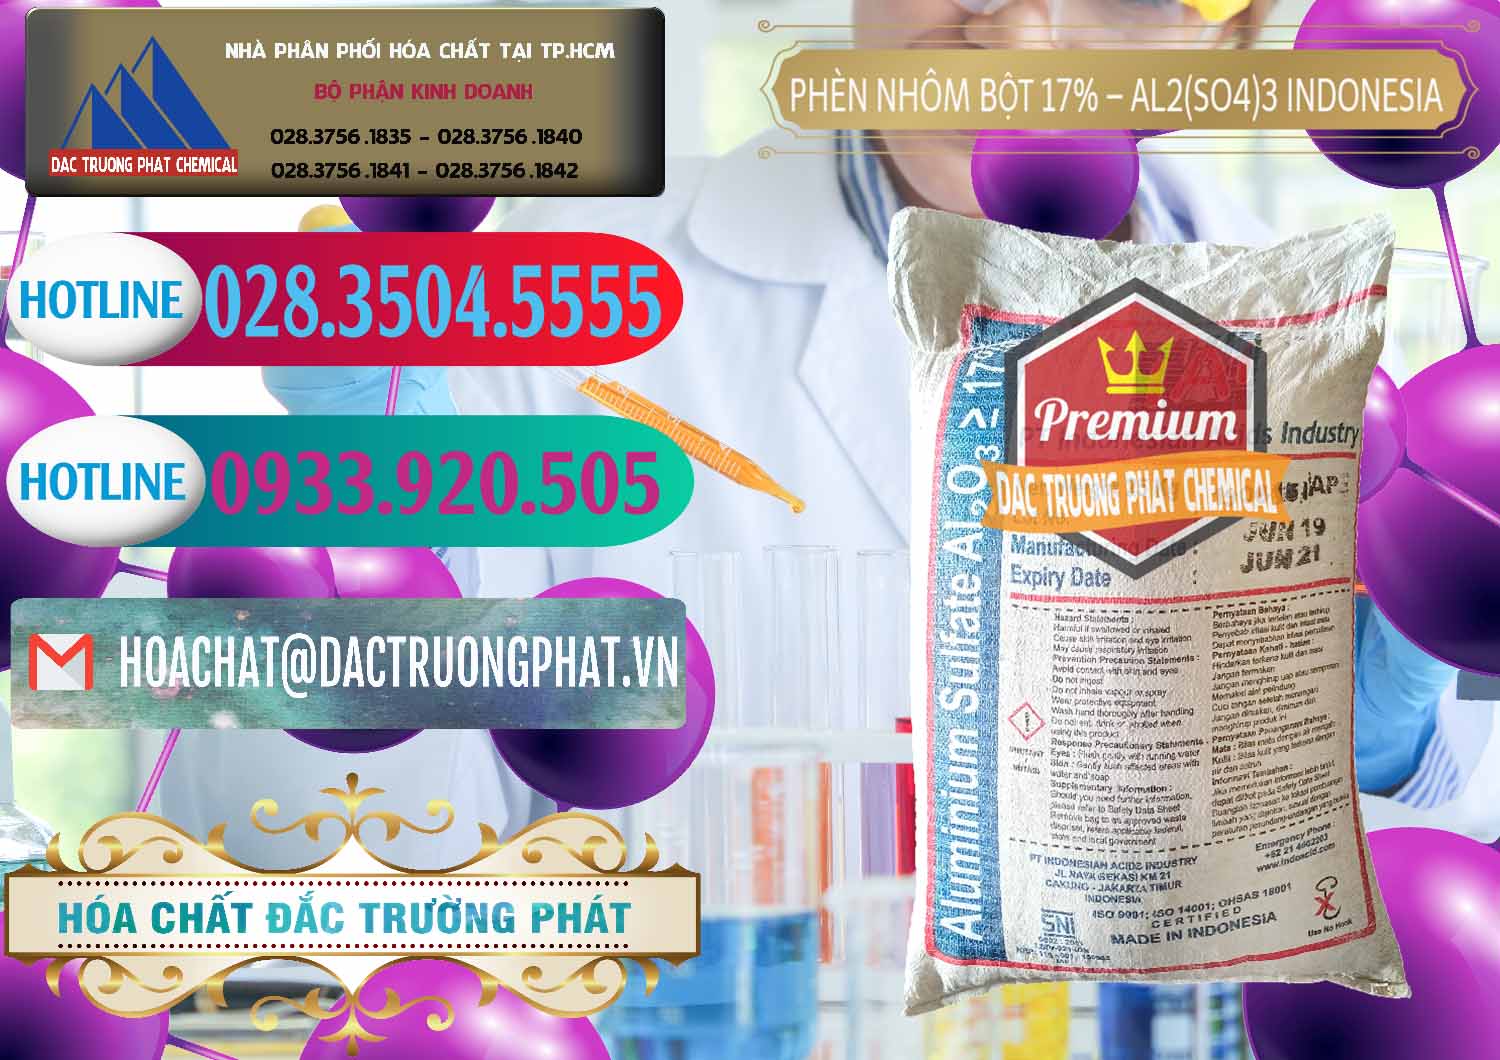 Chuyên cung cấp - bán Phèn Nhôm Bột - Al2(SO4)3 17% bao 25kg Indonesia - 0114 - Nơi chuyên kinh doanh và cung cấp hóa chất tại TP.HCM - truongphat.vn